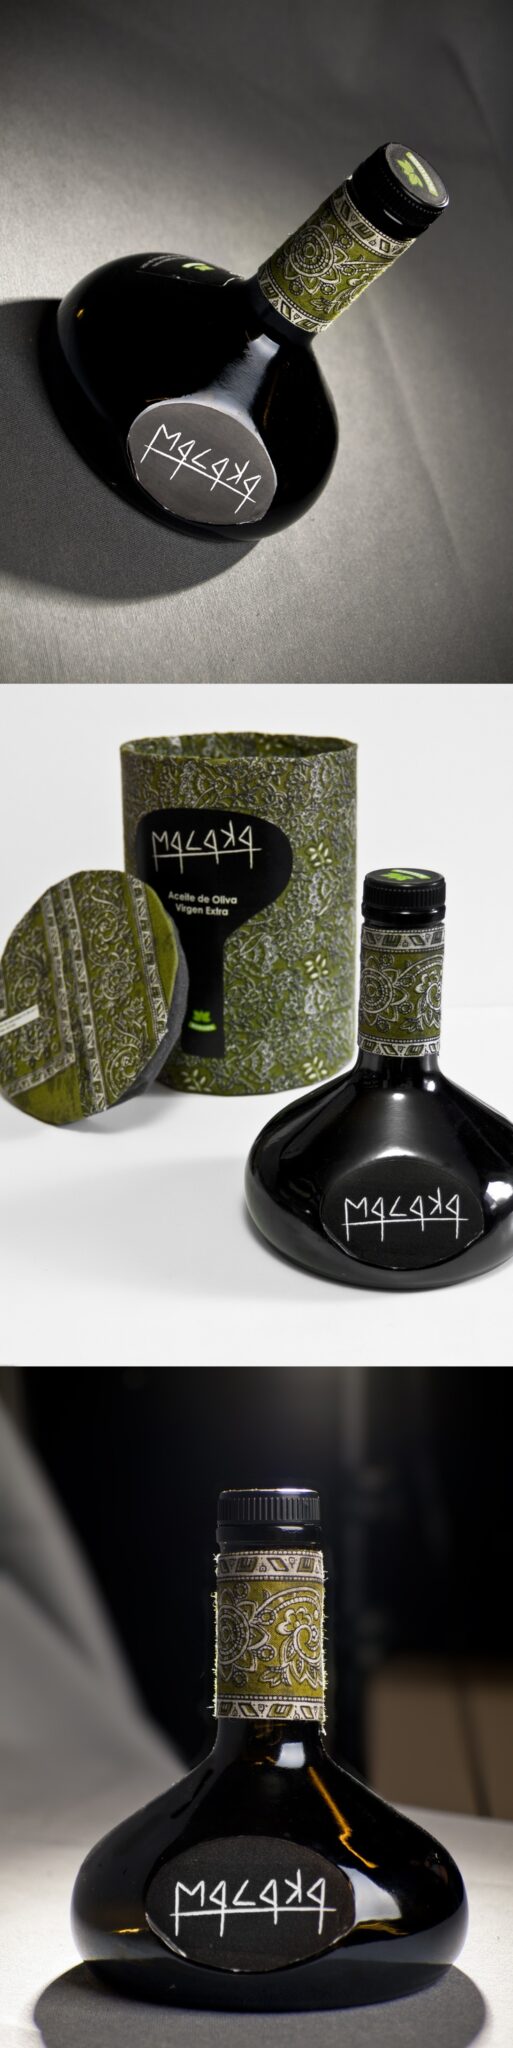 Creative Packaging Design 20 Olive Oil Bottles The Branding Journal